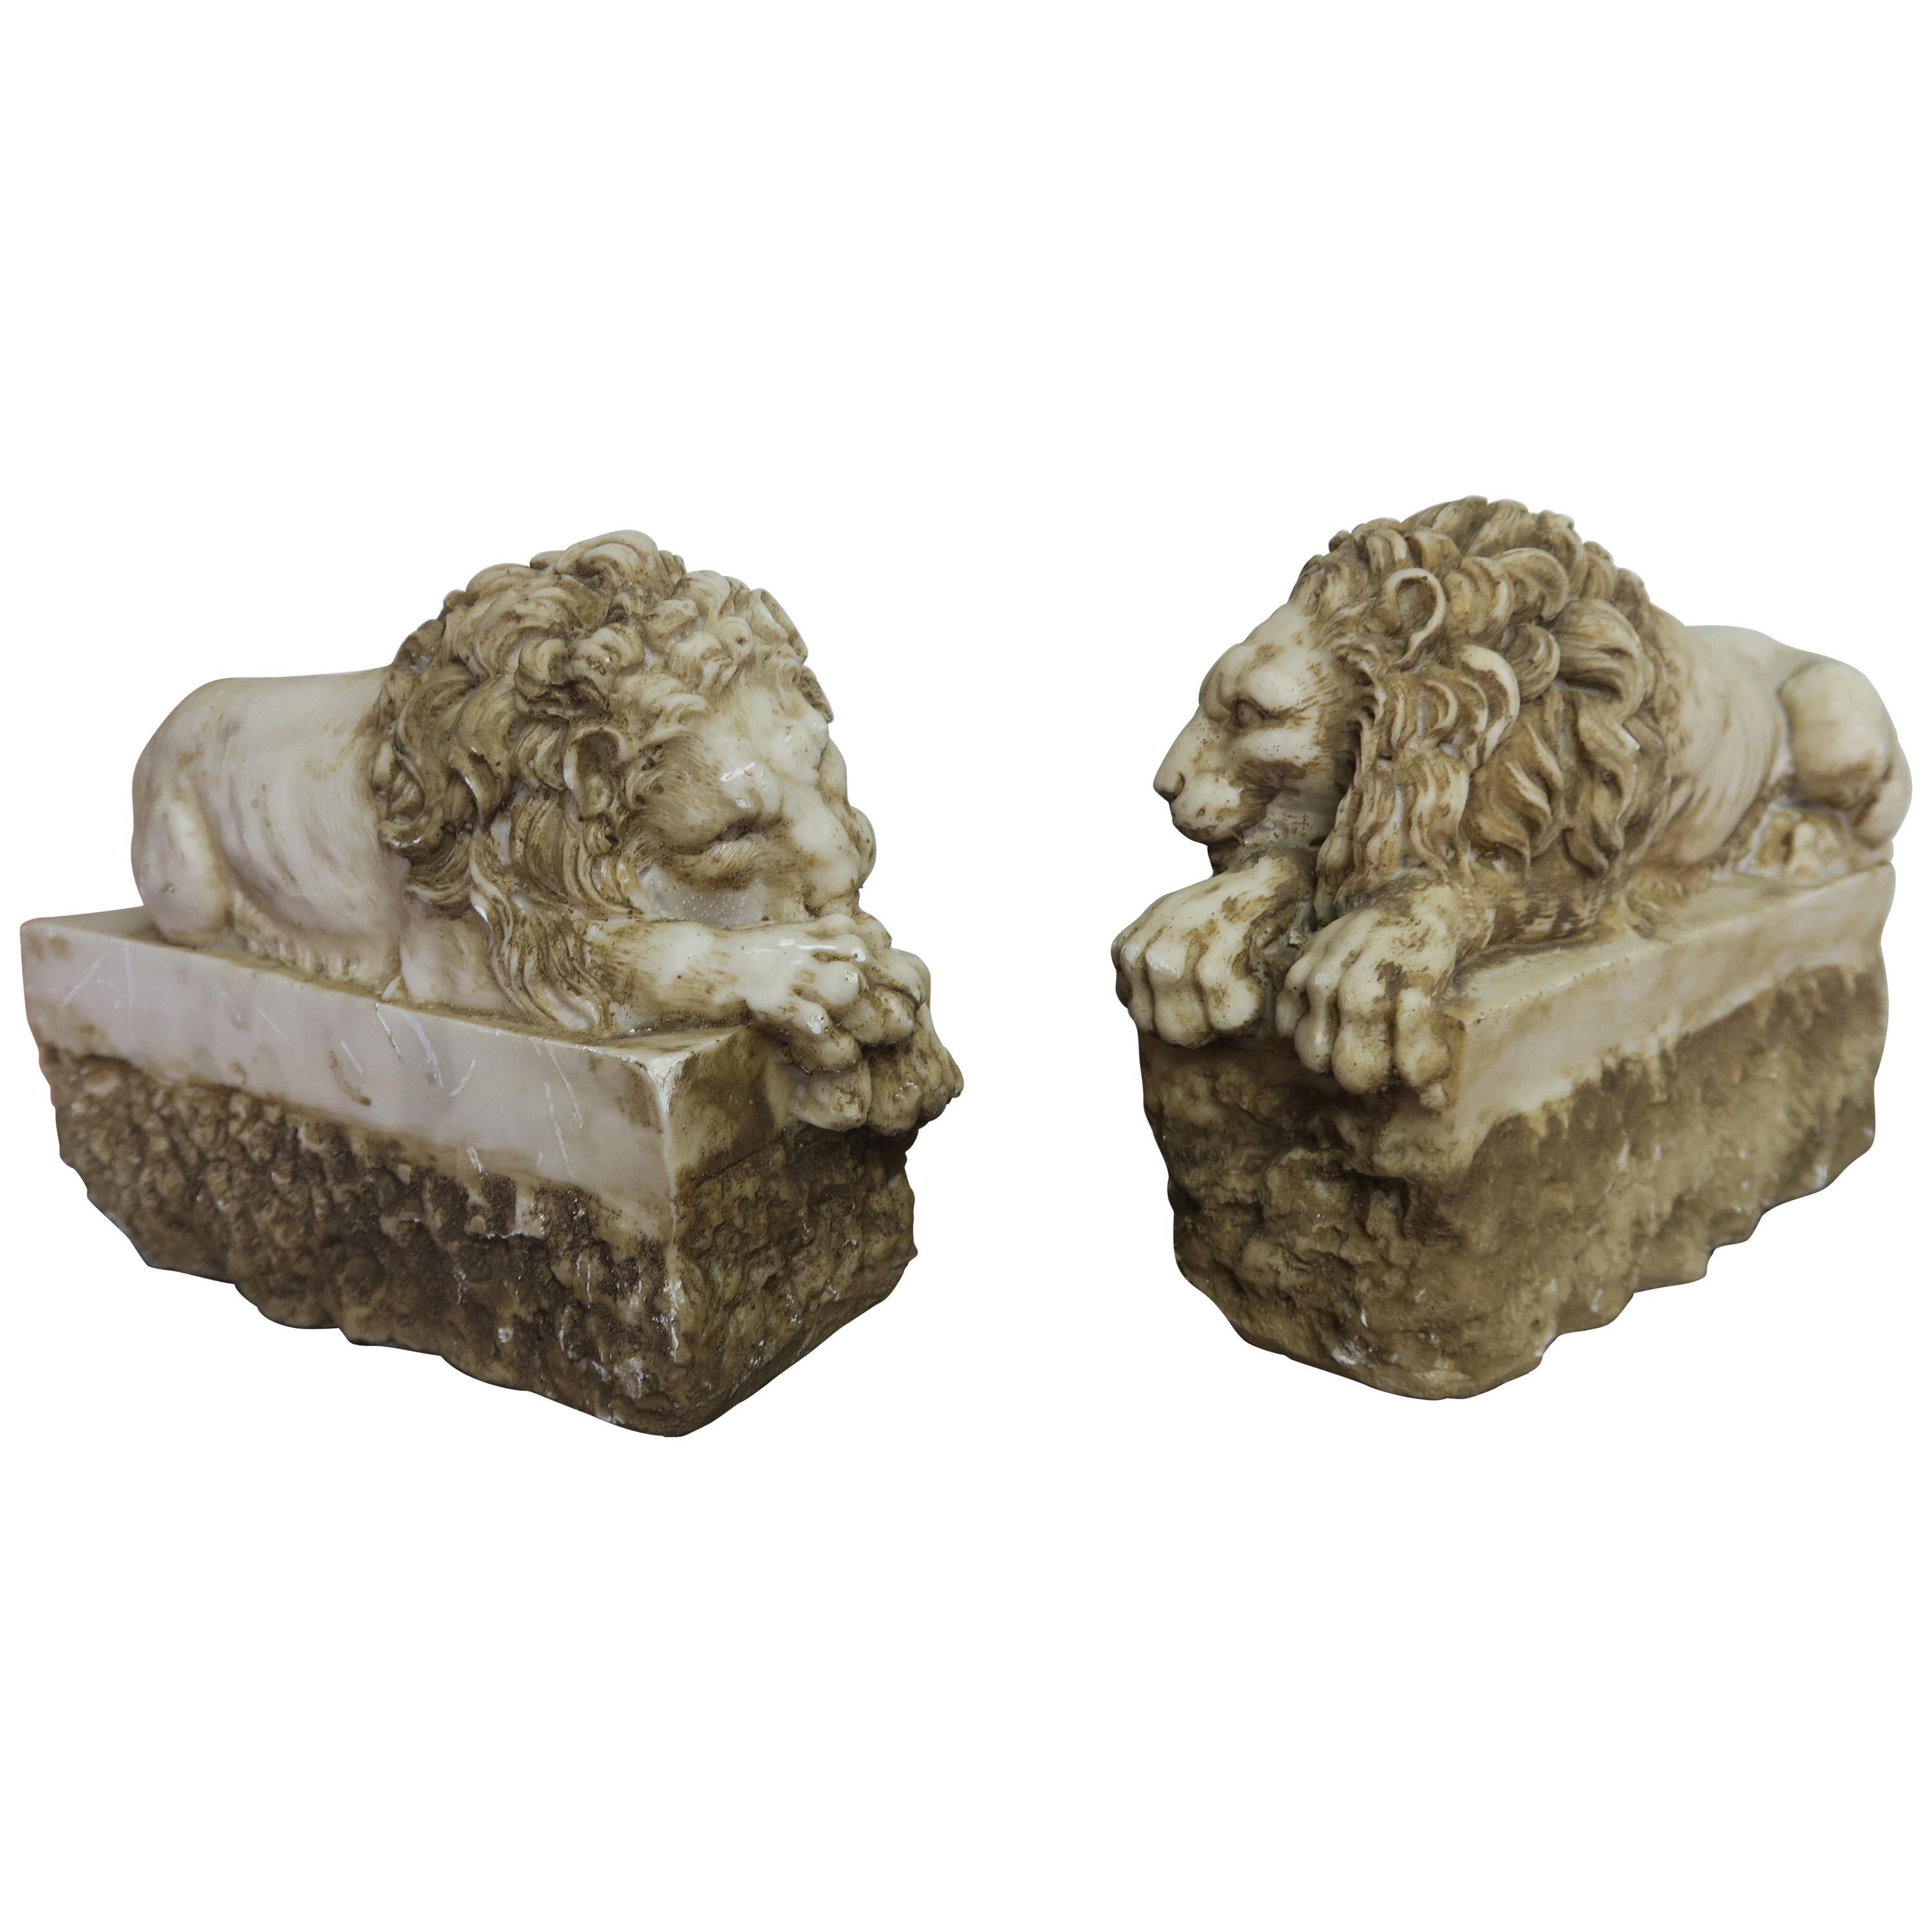 Paire de répliques de lions en pierre sculptée originaires d'Antonio Canova